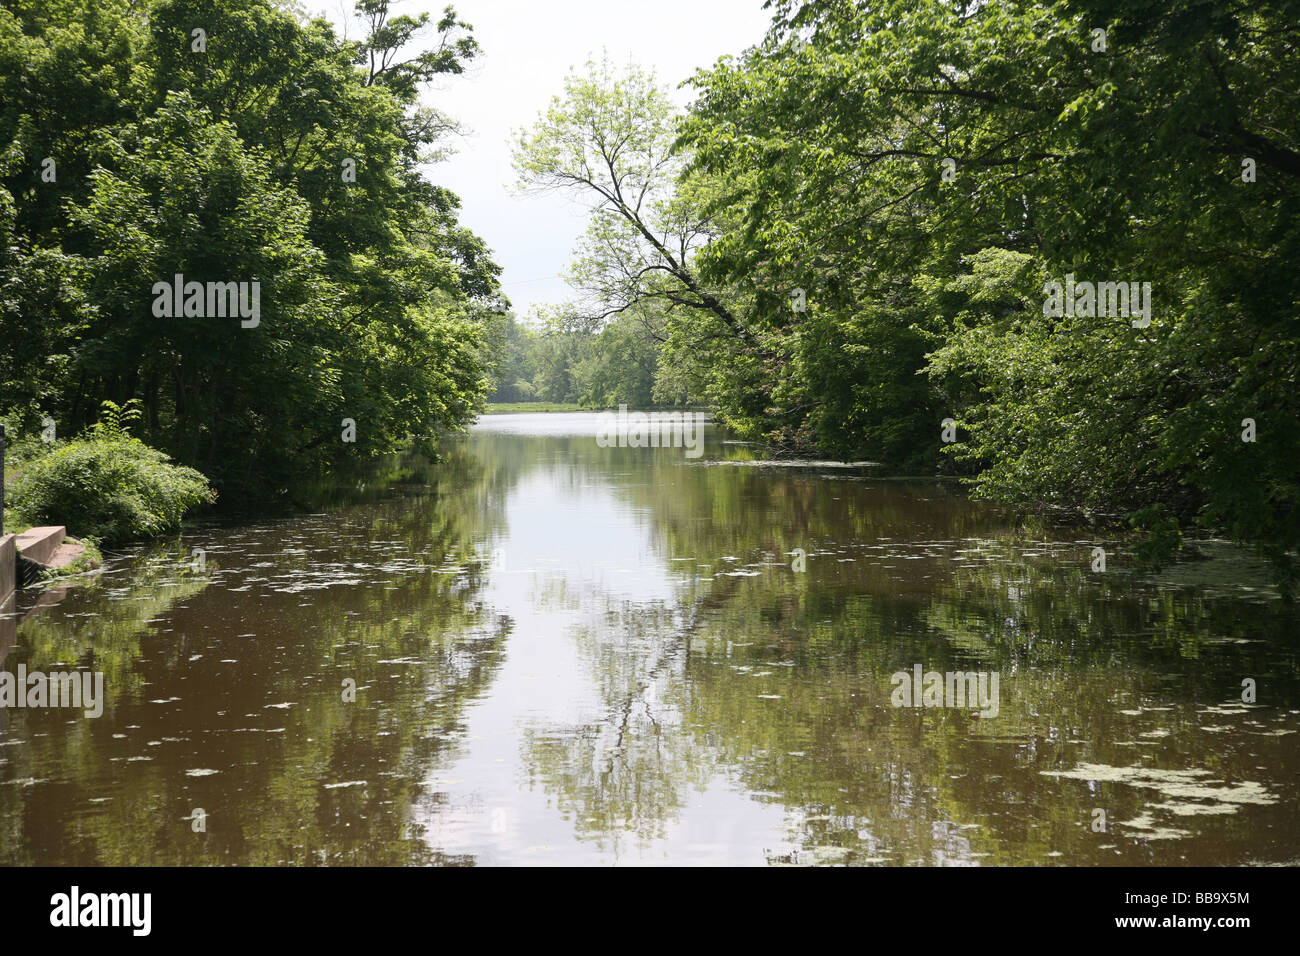 Malerische historische Raritan (D & R) Kanal, Wasser Fluss Transport-Kanal Zweig Frühling grün Bäume 175 Jahre New Jersey Stockfoto